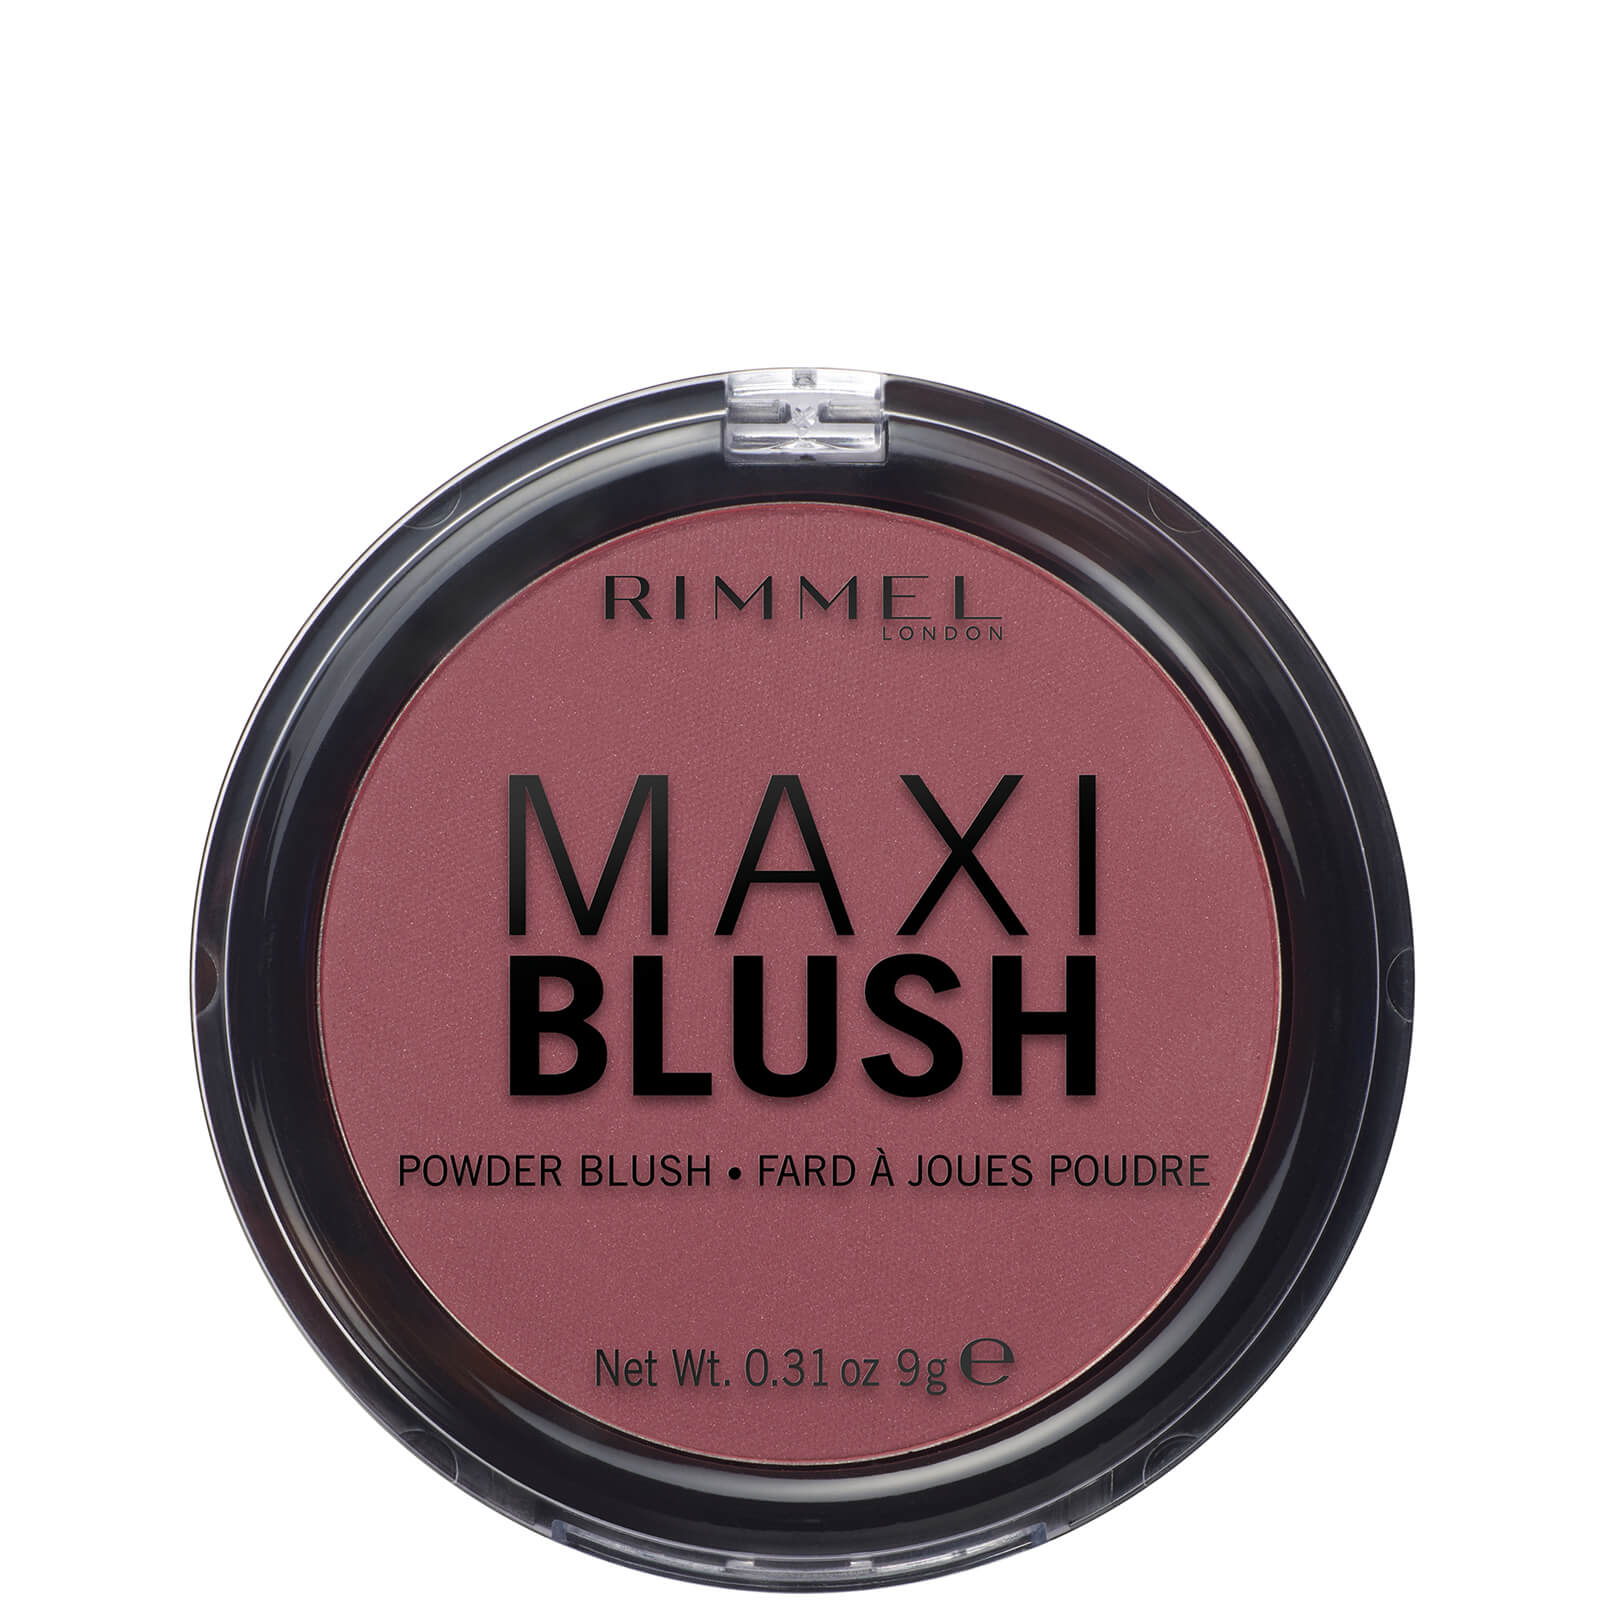 Image of Rimmel London Maxi Blush – 05 – Rendez-Vous, 9g